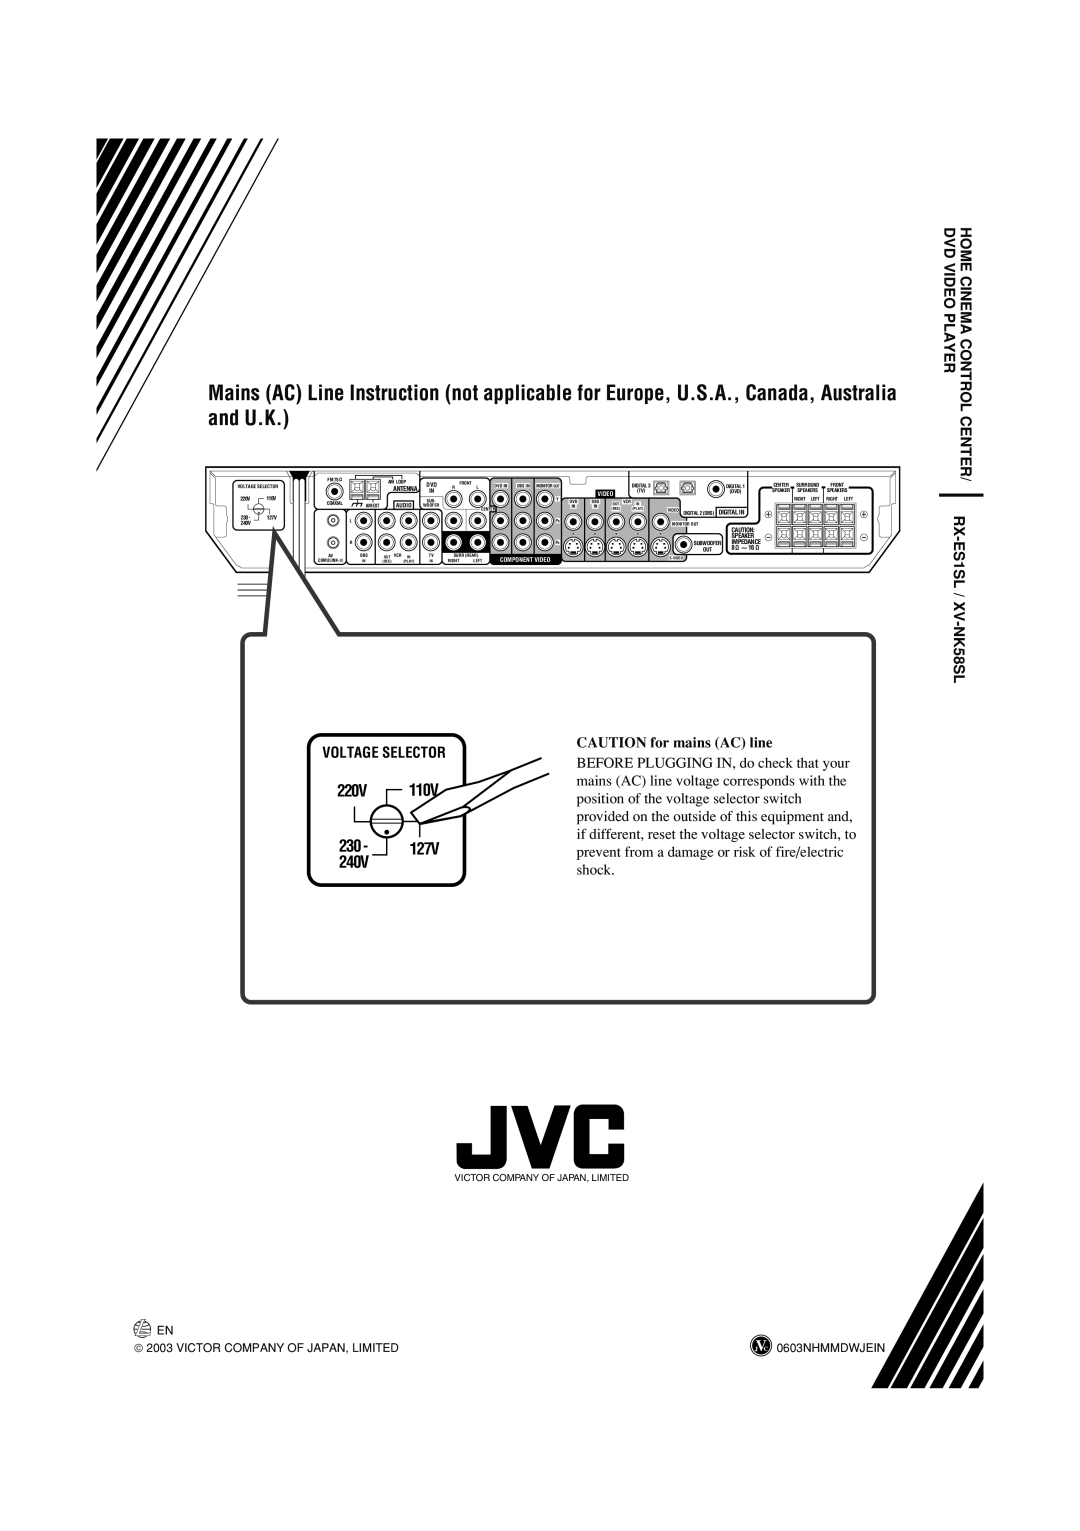 JVC LVT1002-012B 220V, CENTER RX-ES1SL /XV -NK58SL, Voltage Selector, CAUTION for mains AC line, Video, Digital In, Front 